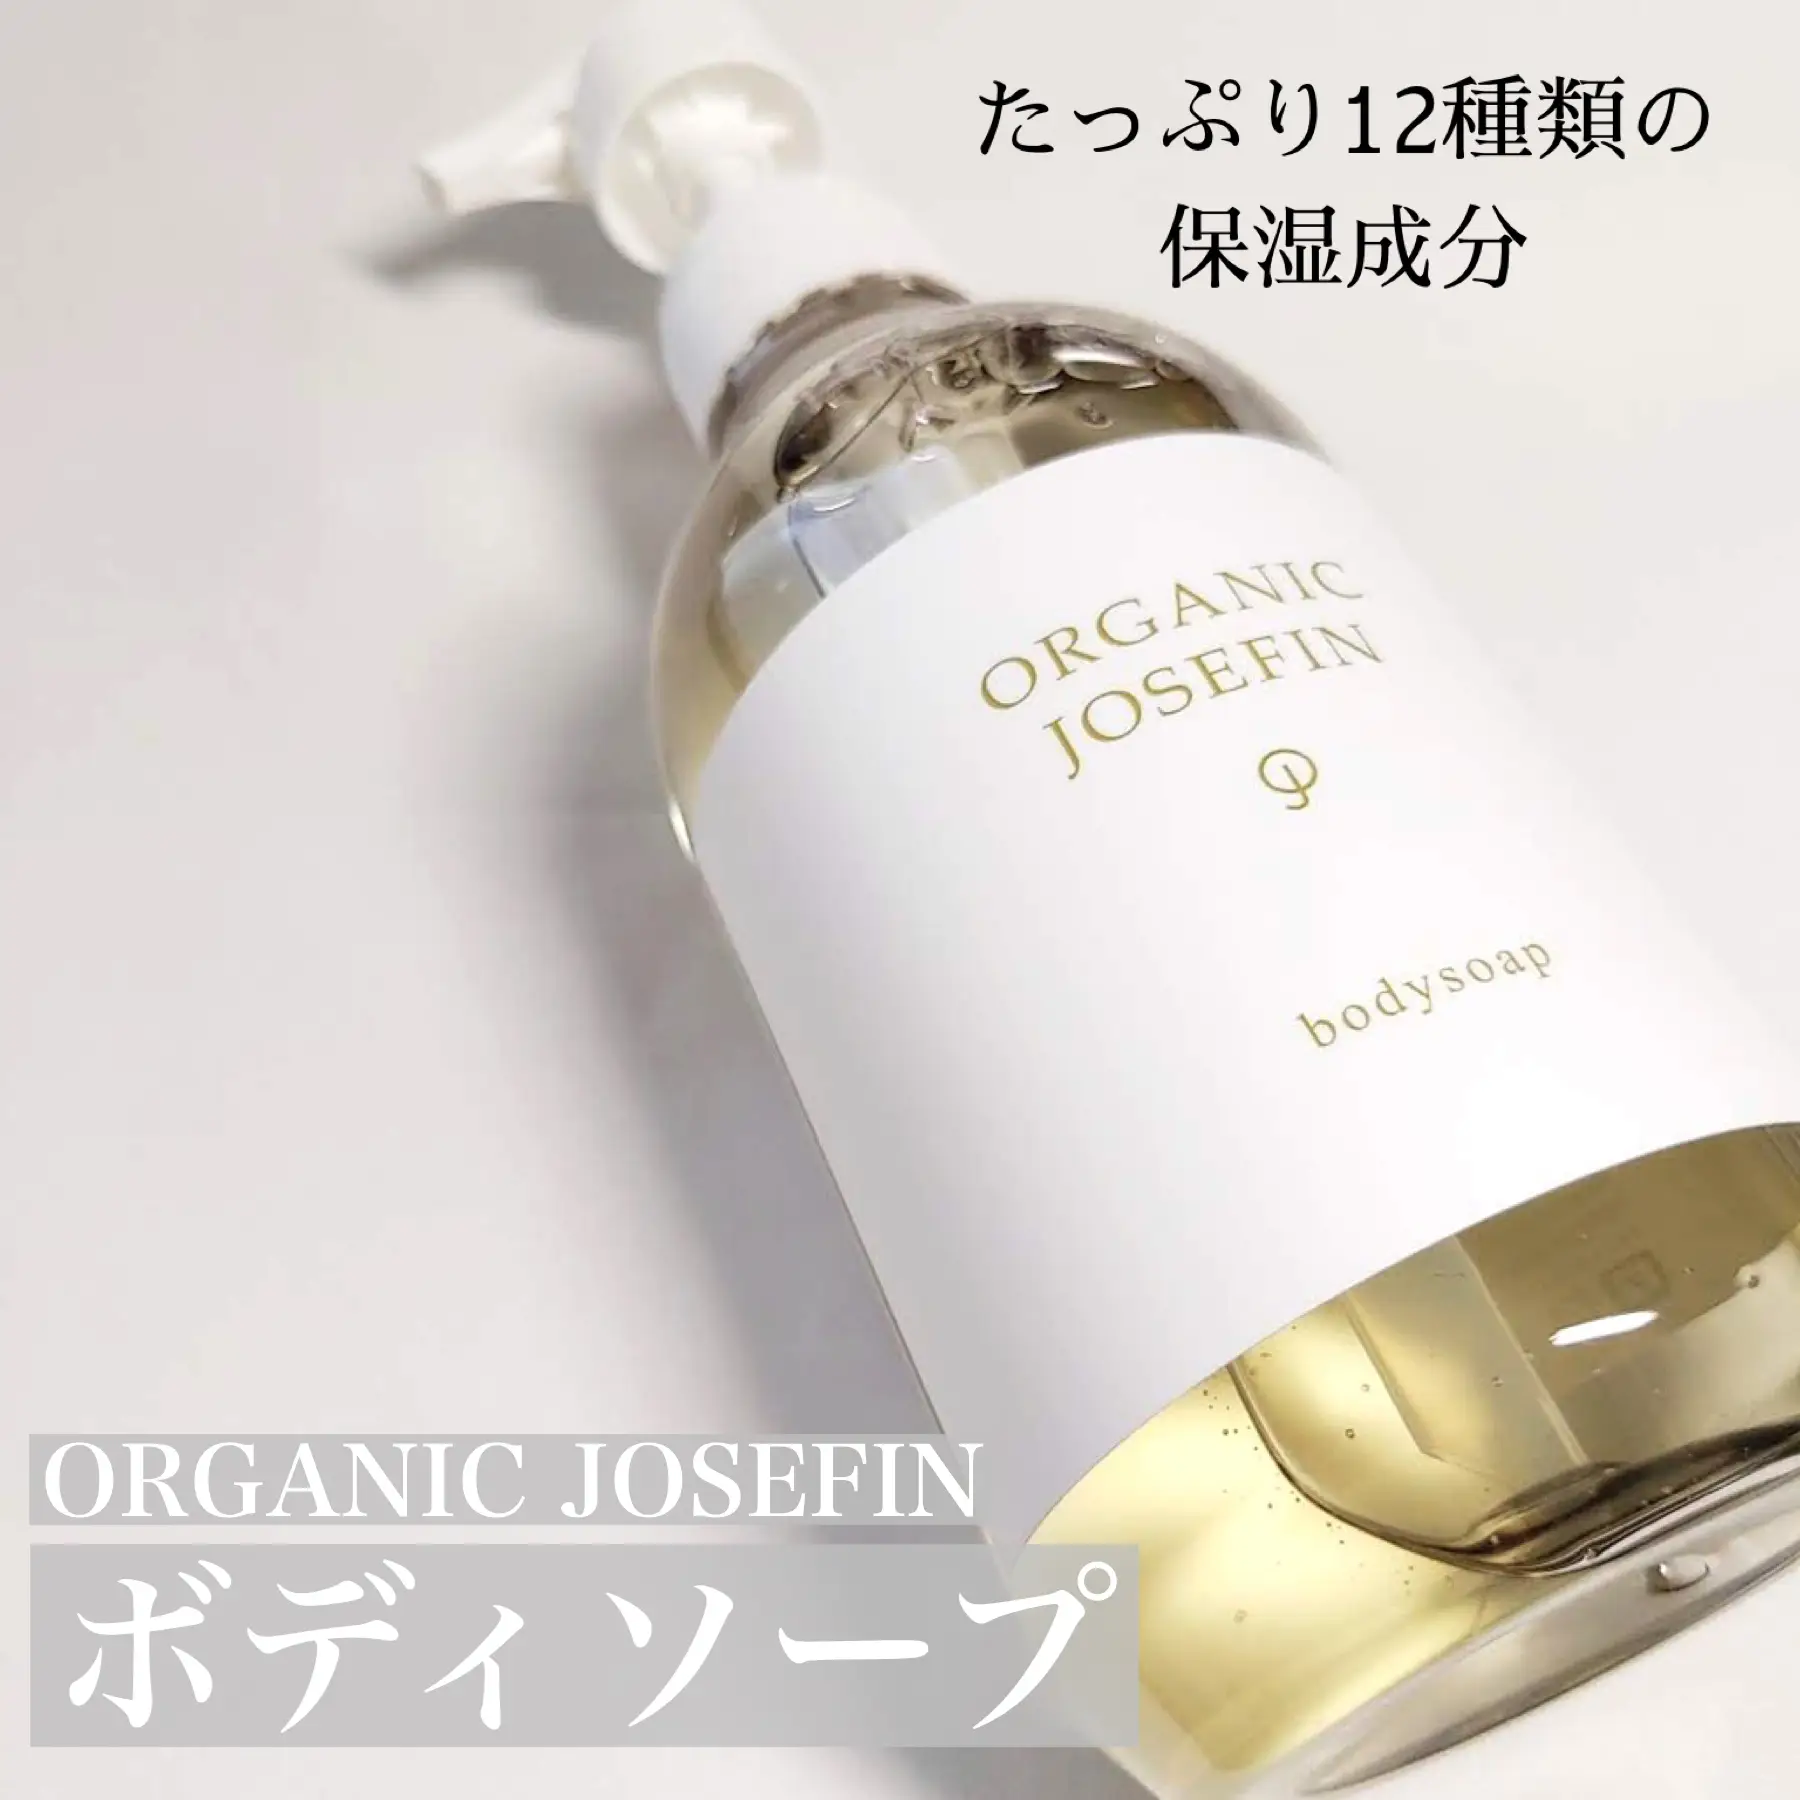 日本製品 ボディー乳液。洗浄料。入浴剤。。これはトモさん専用です 